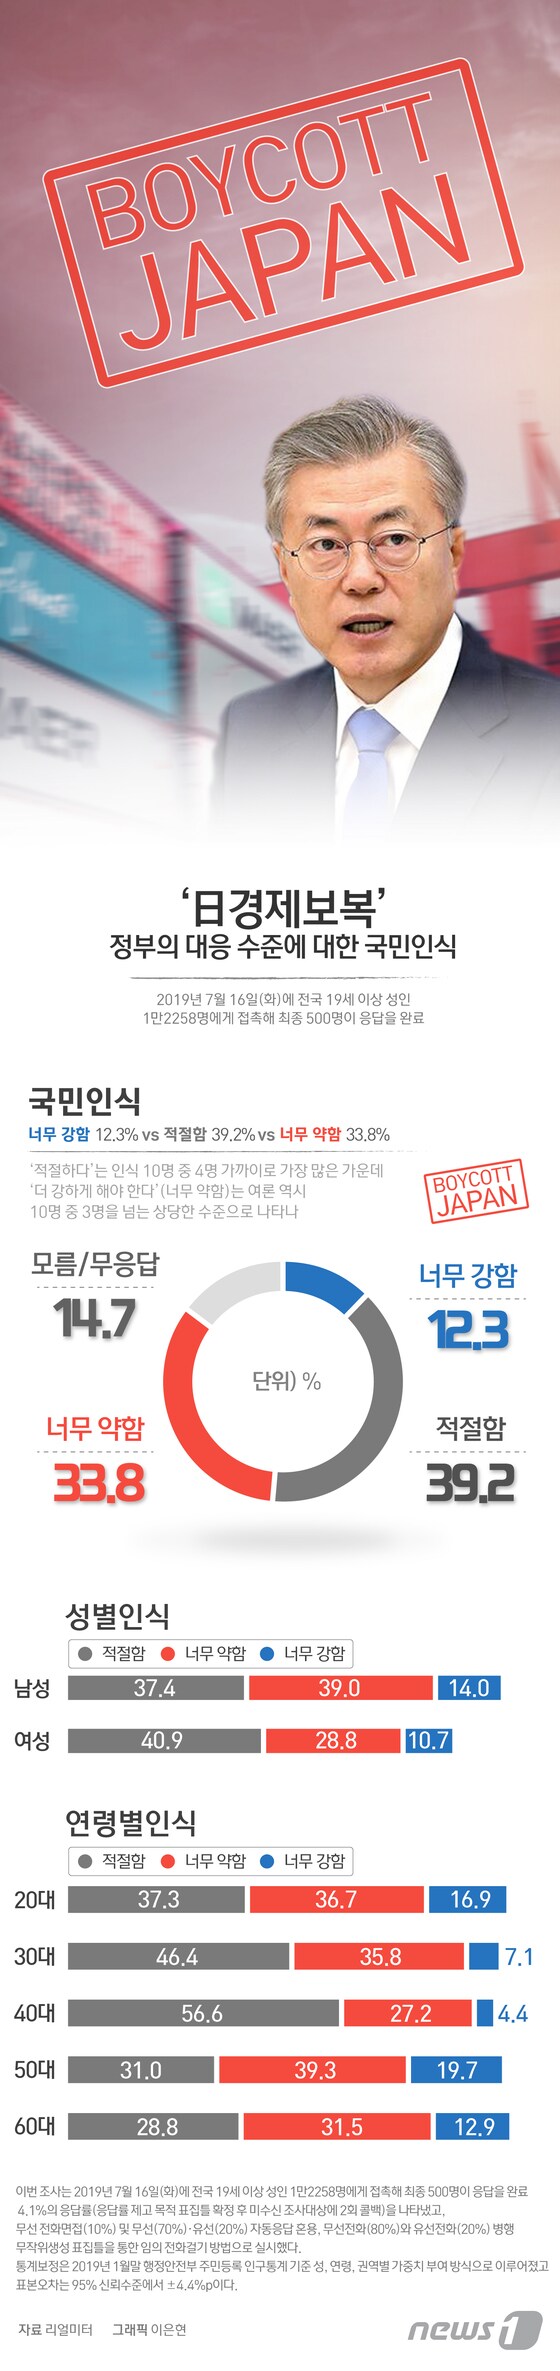 [그래픽뉴스] '日경제보복' 정부의 대응 수준에 대한 국민인식